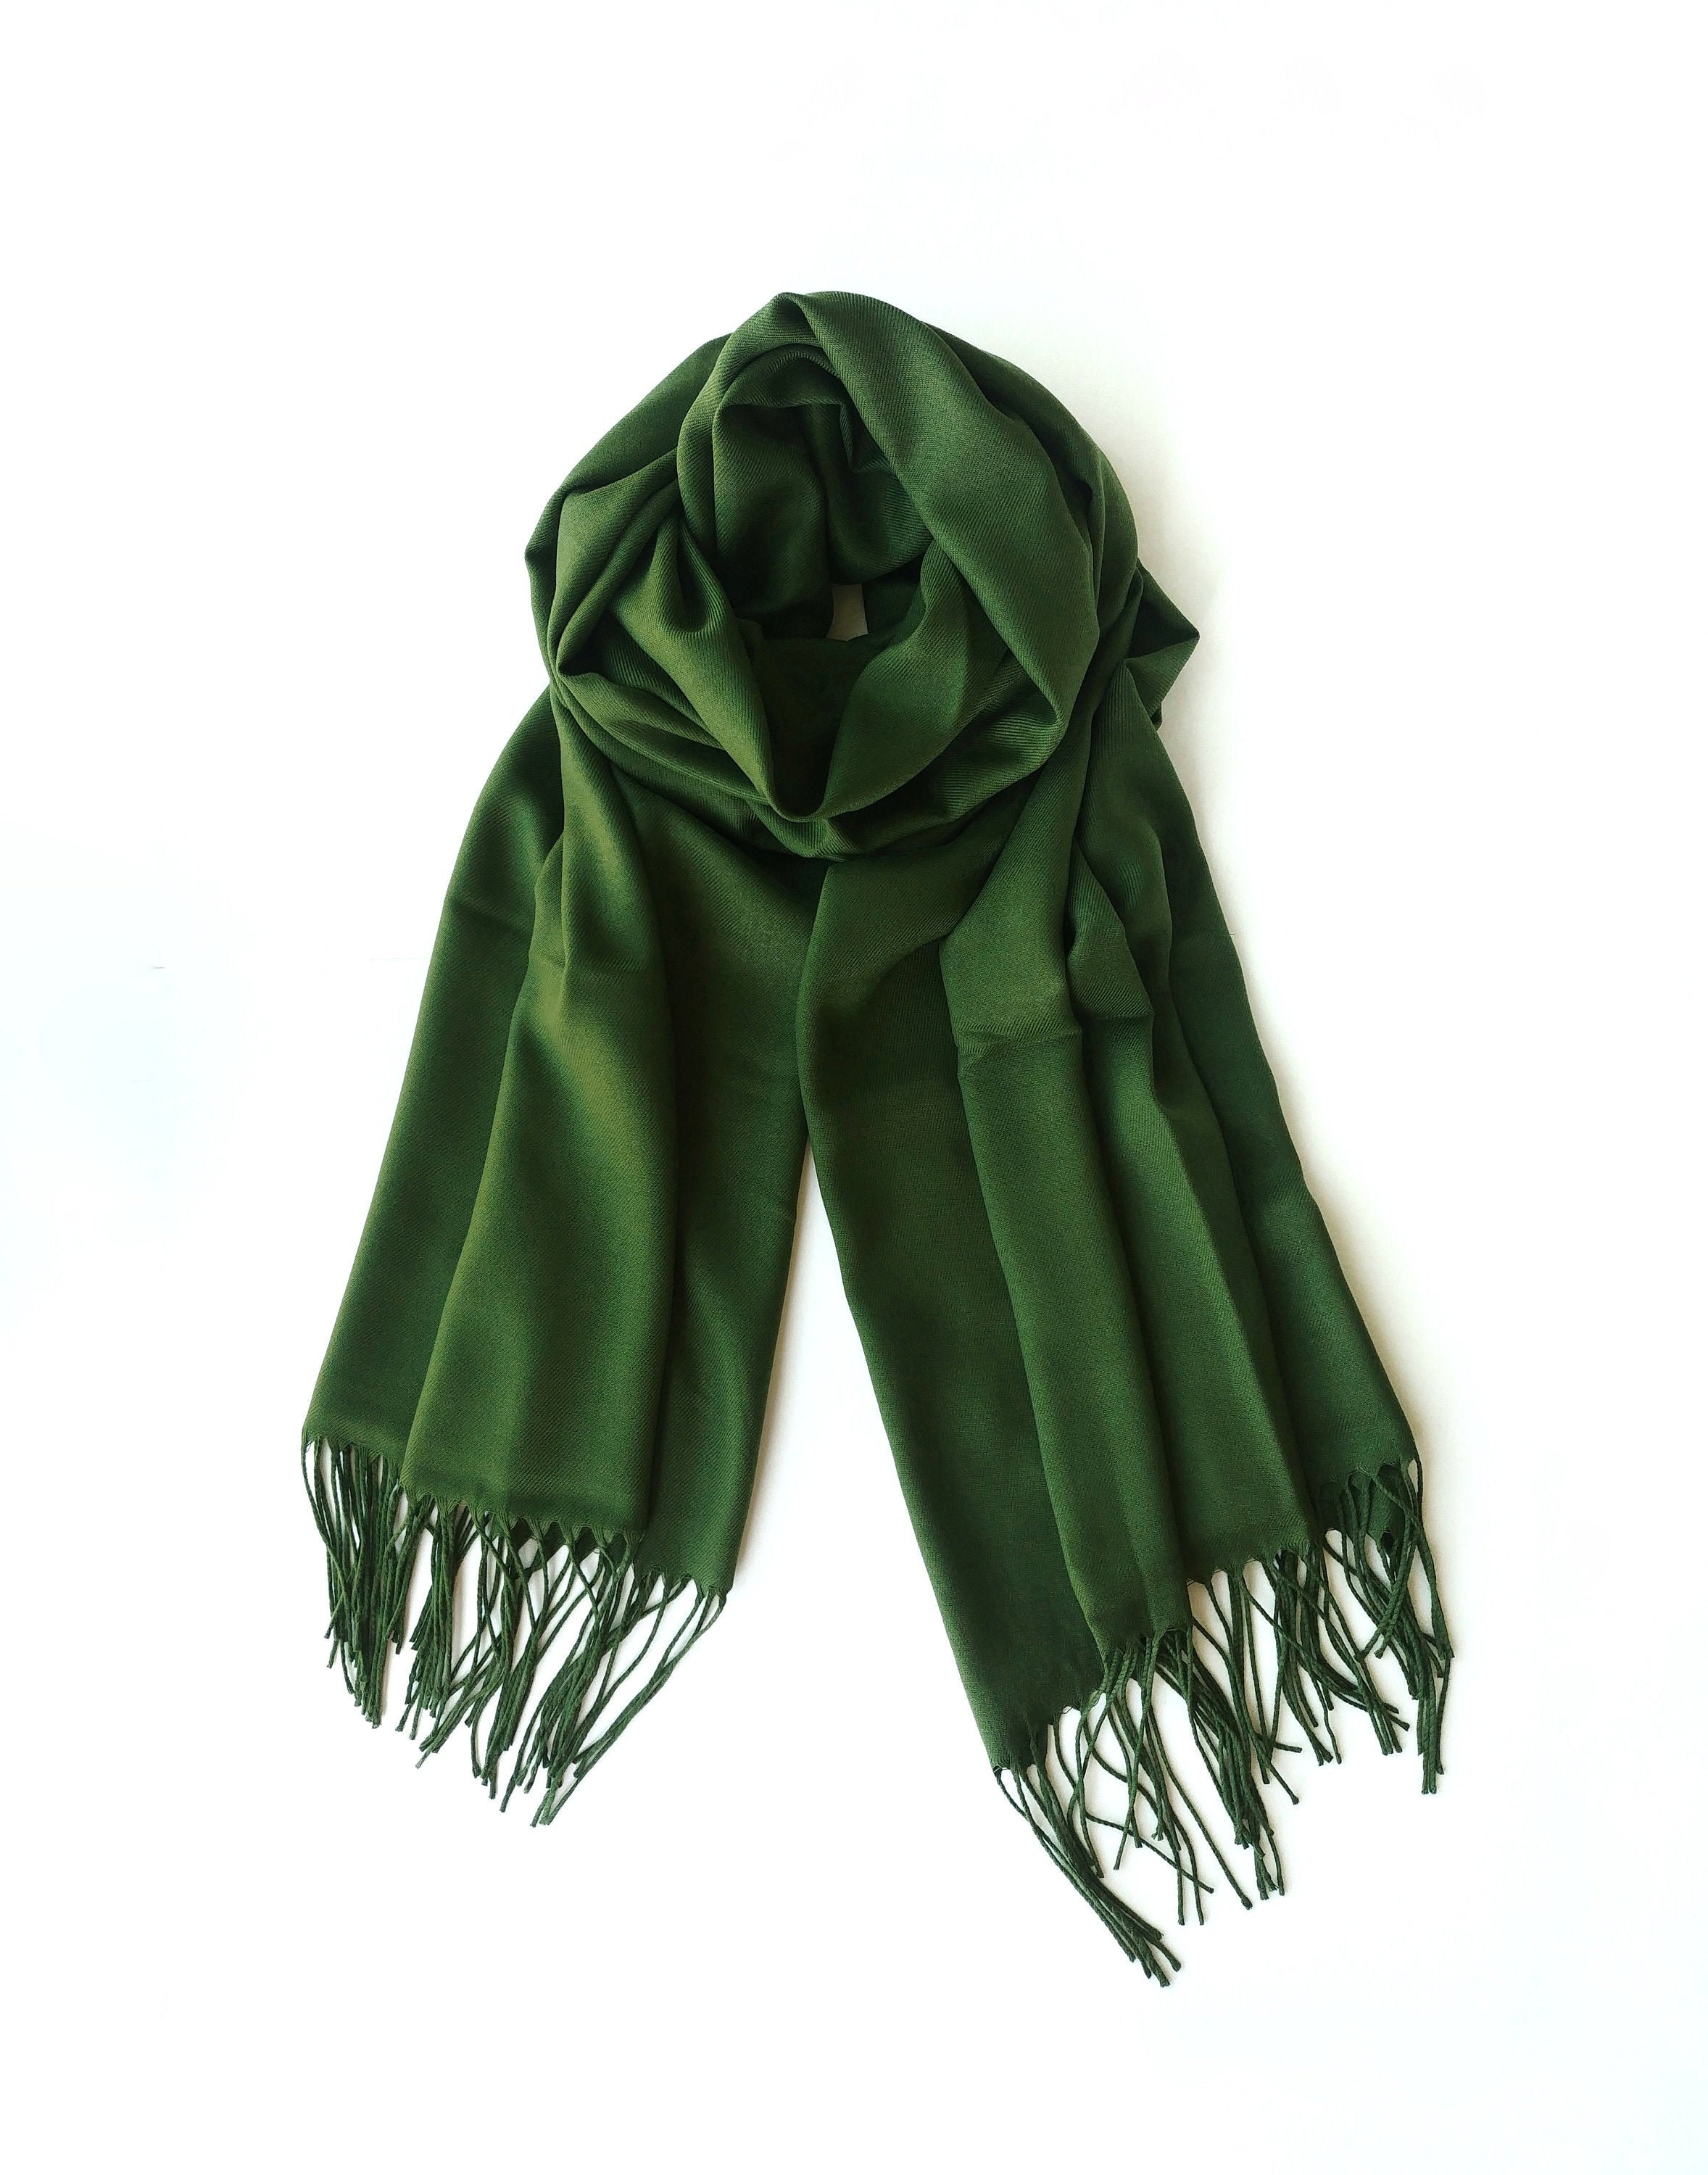 Шарф, зелёный. Платок зеленый. Салатовый шарф. Зеленый шарфик. Зеленый шарф купить